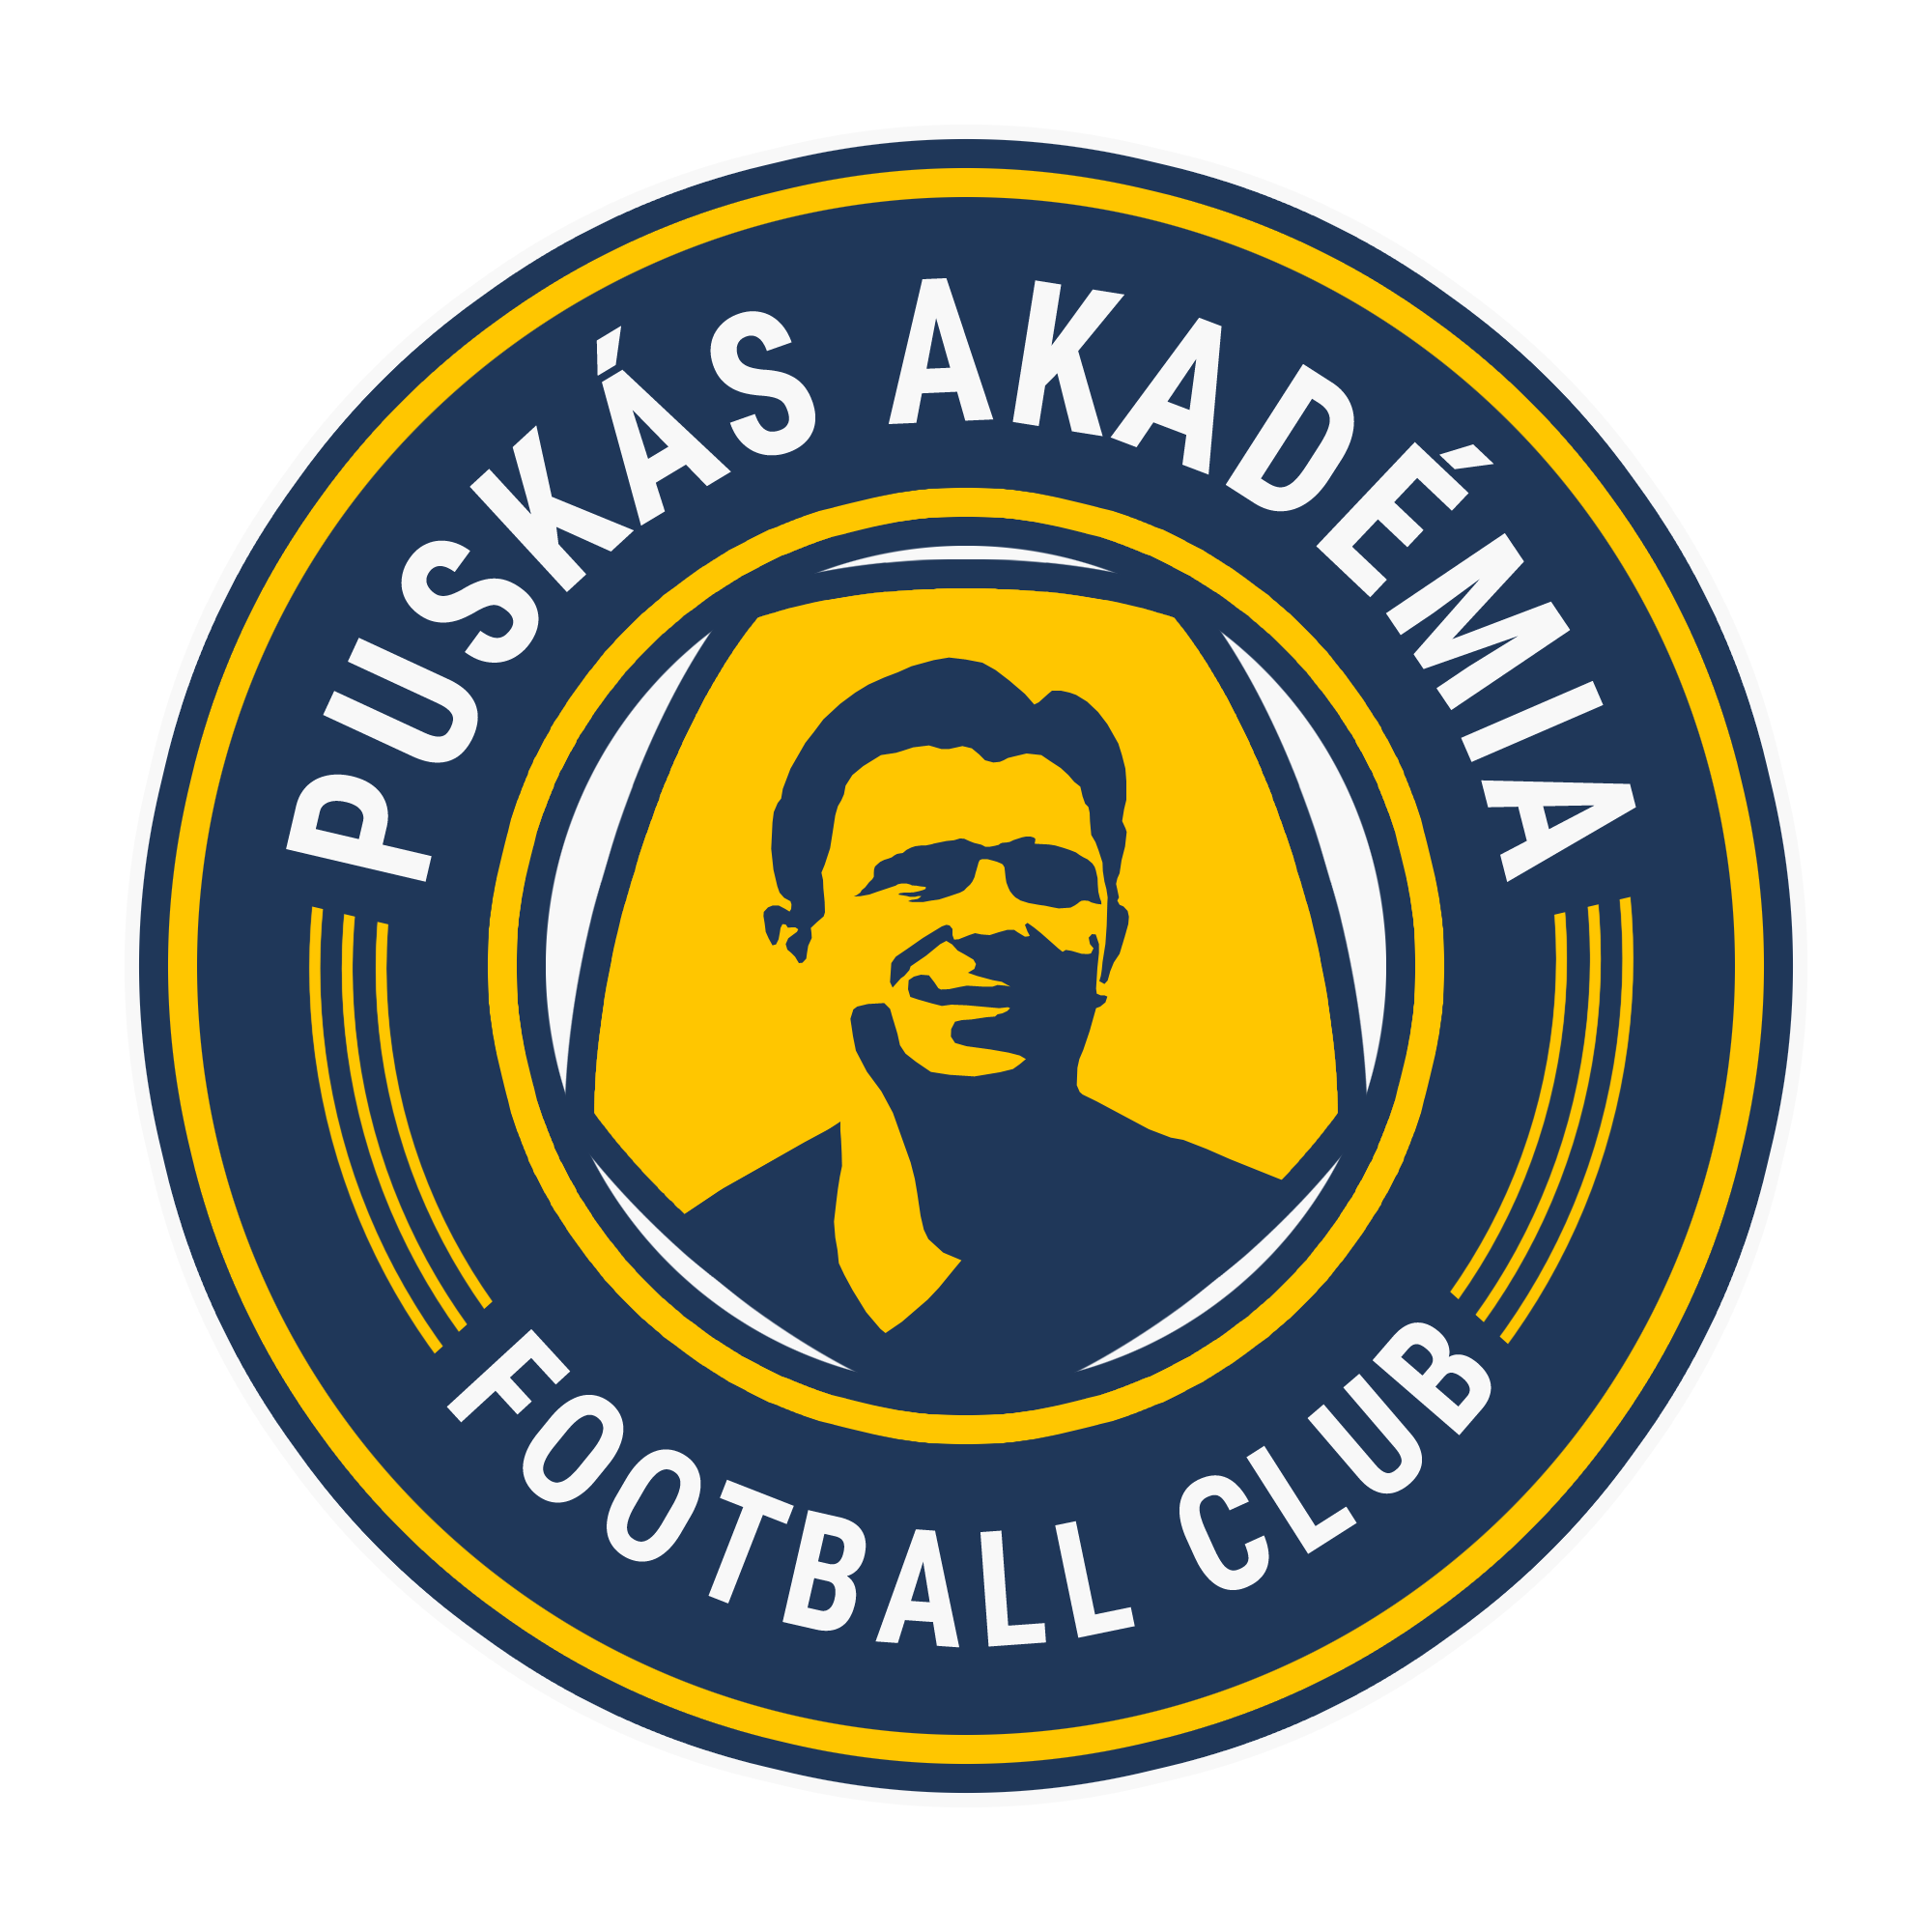 Club: Puskas Akademia FC